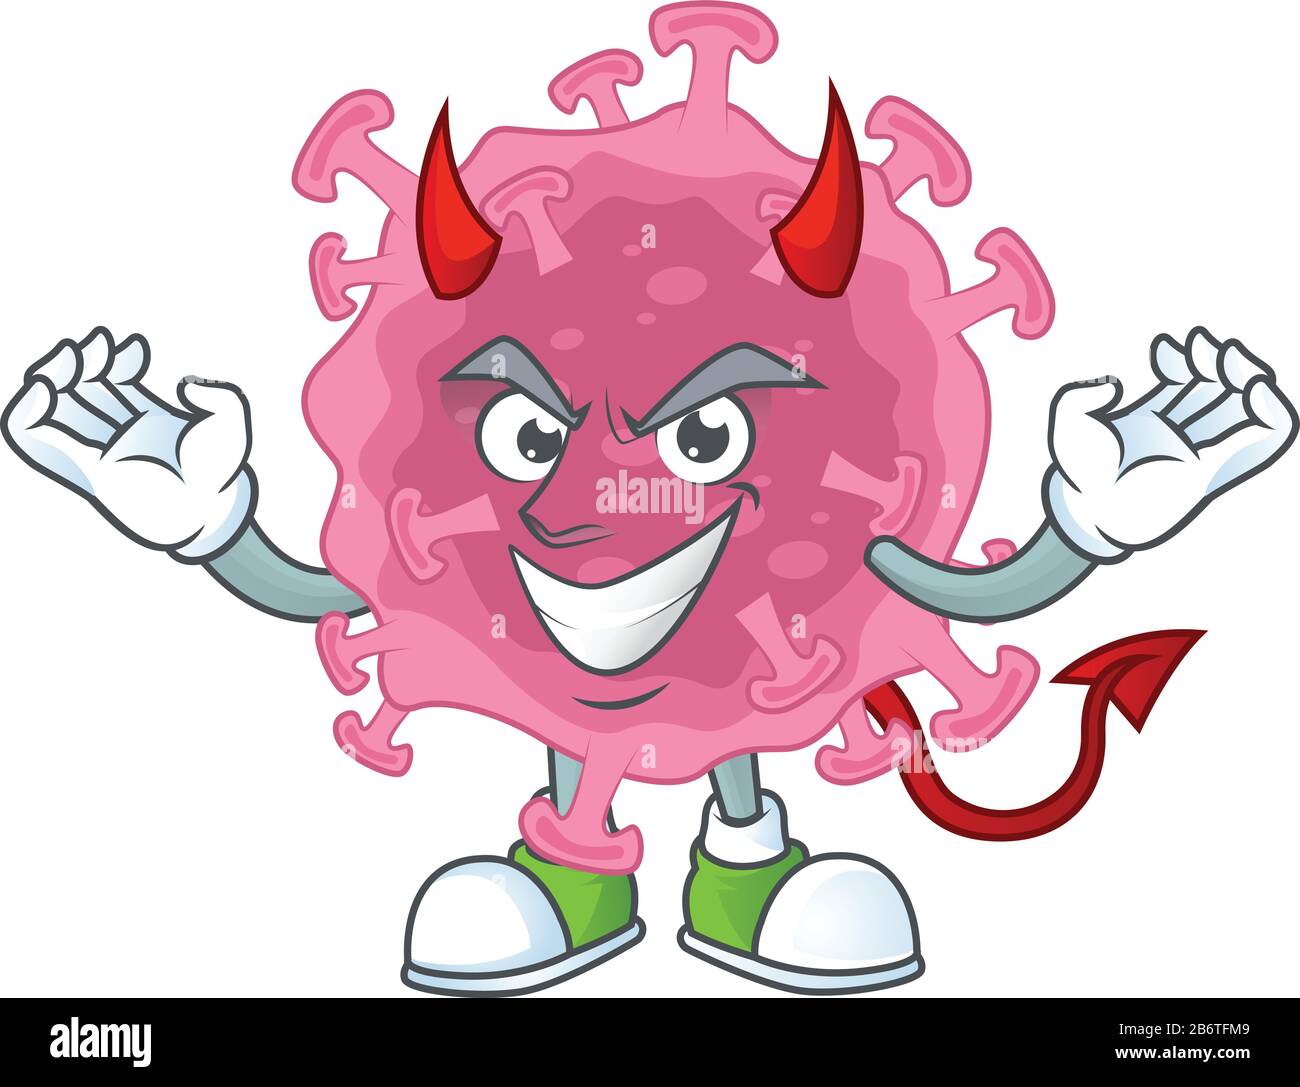 Dibujo de dibujos animados del parásito del virus de la corona en el diseño  de personajes de dibujos animados del diablo Imagen Vector de stock - Alamy